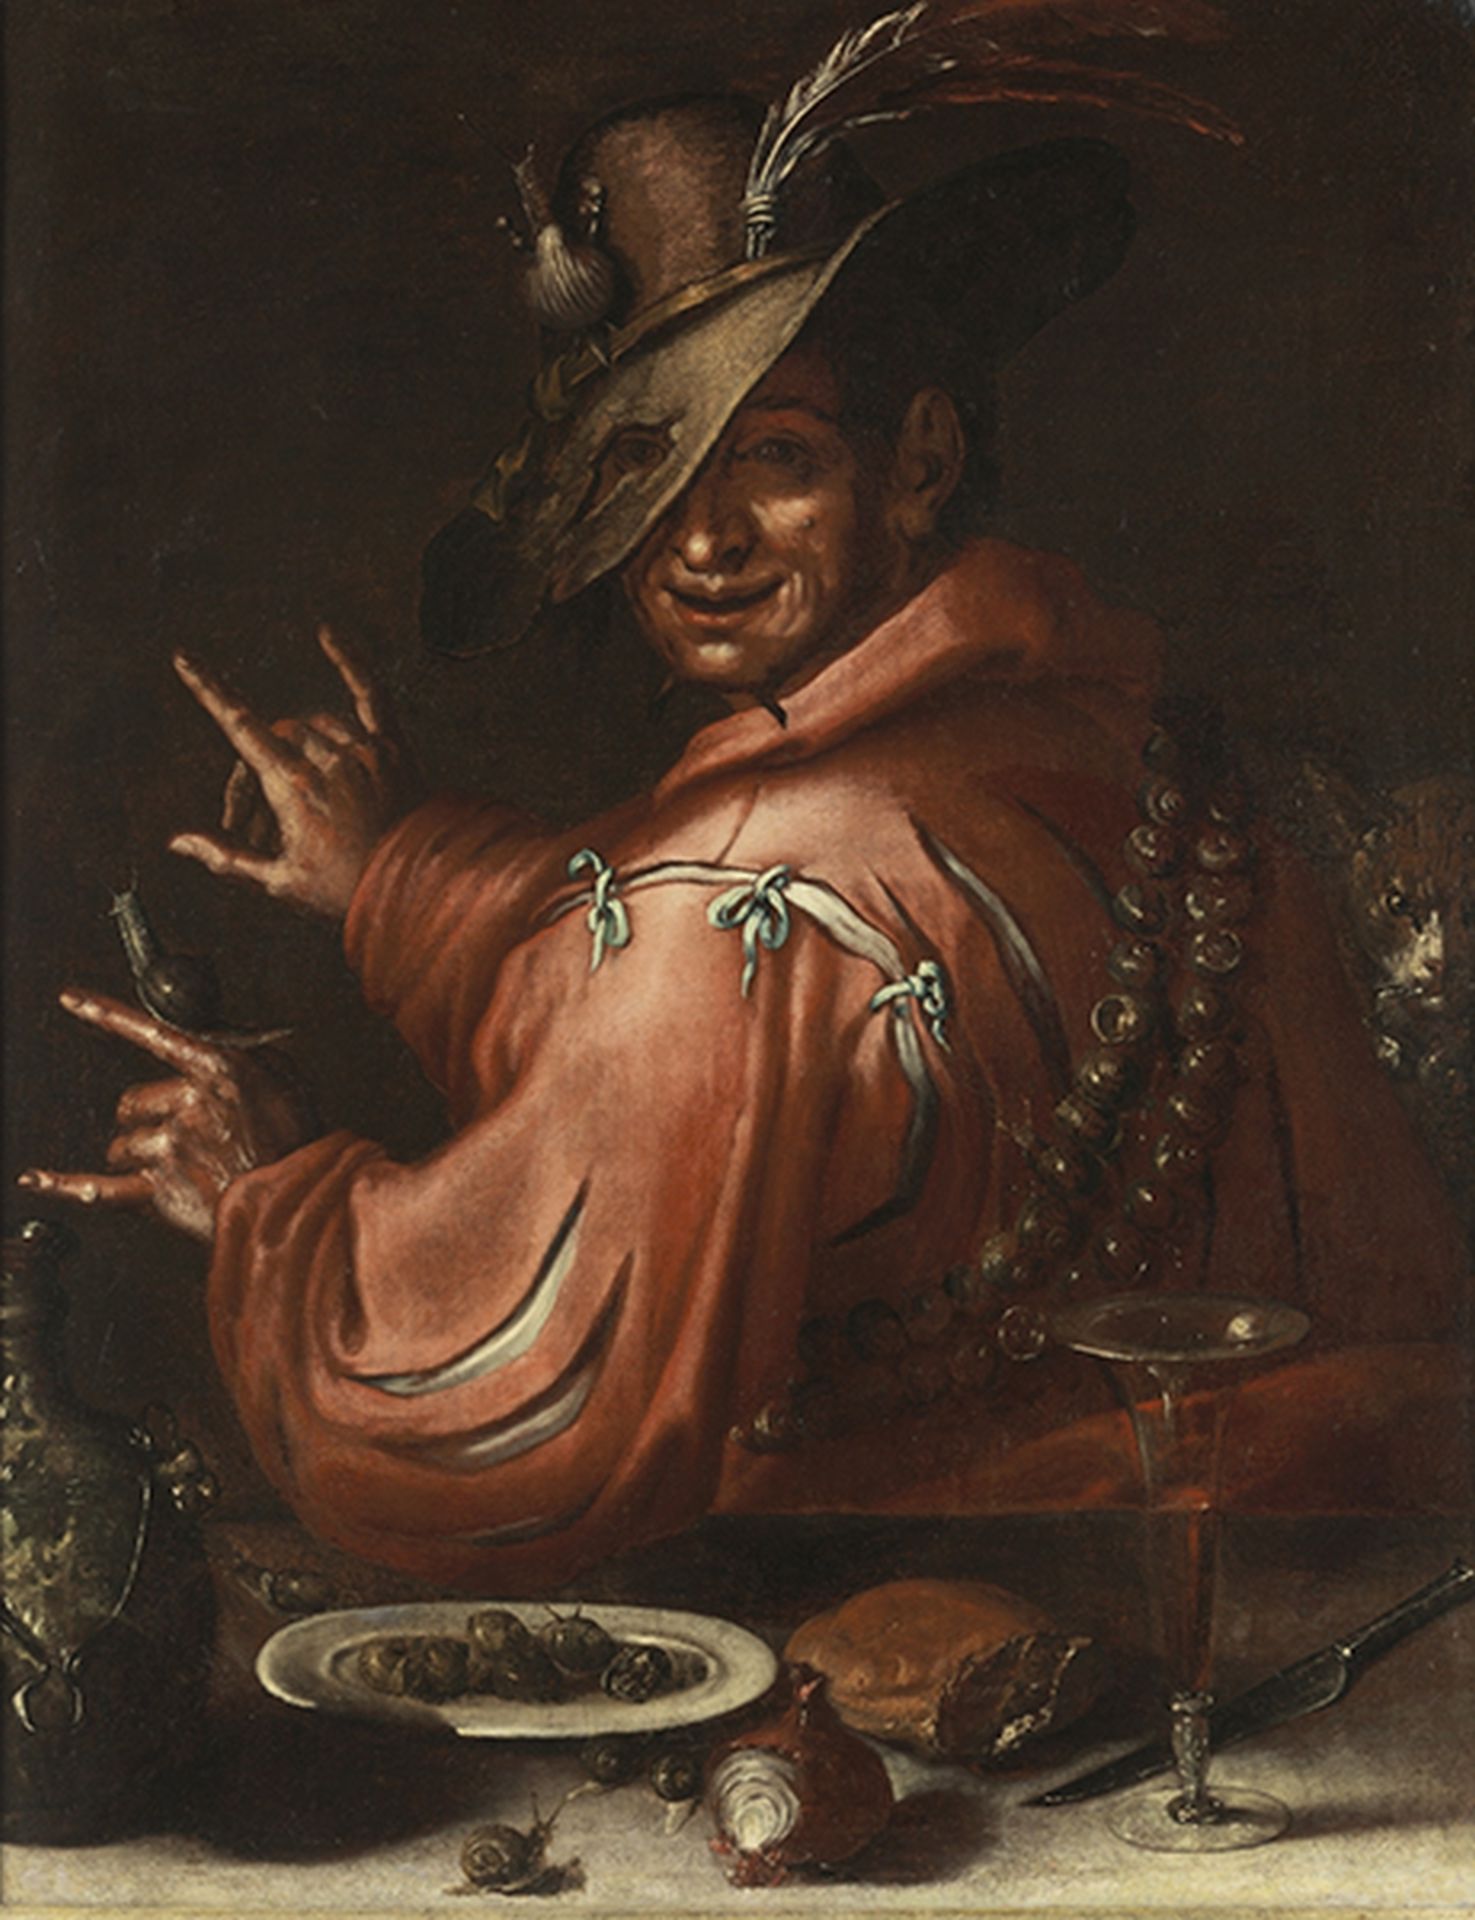 Maler des 17. Jahrhunderts LA BUONA VENTURA (DAS GLÜCK) Öl auf Leinwand. Doubliert. 95 x 75 cm. - Bild 6 aus 6